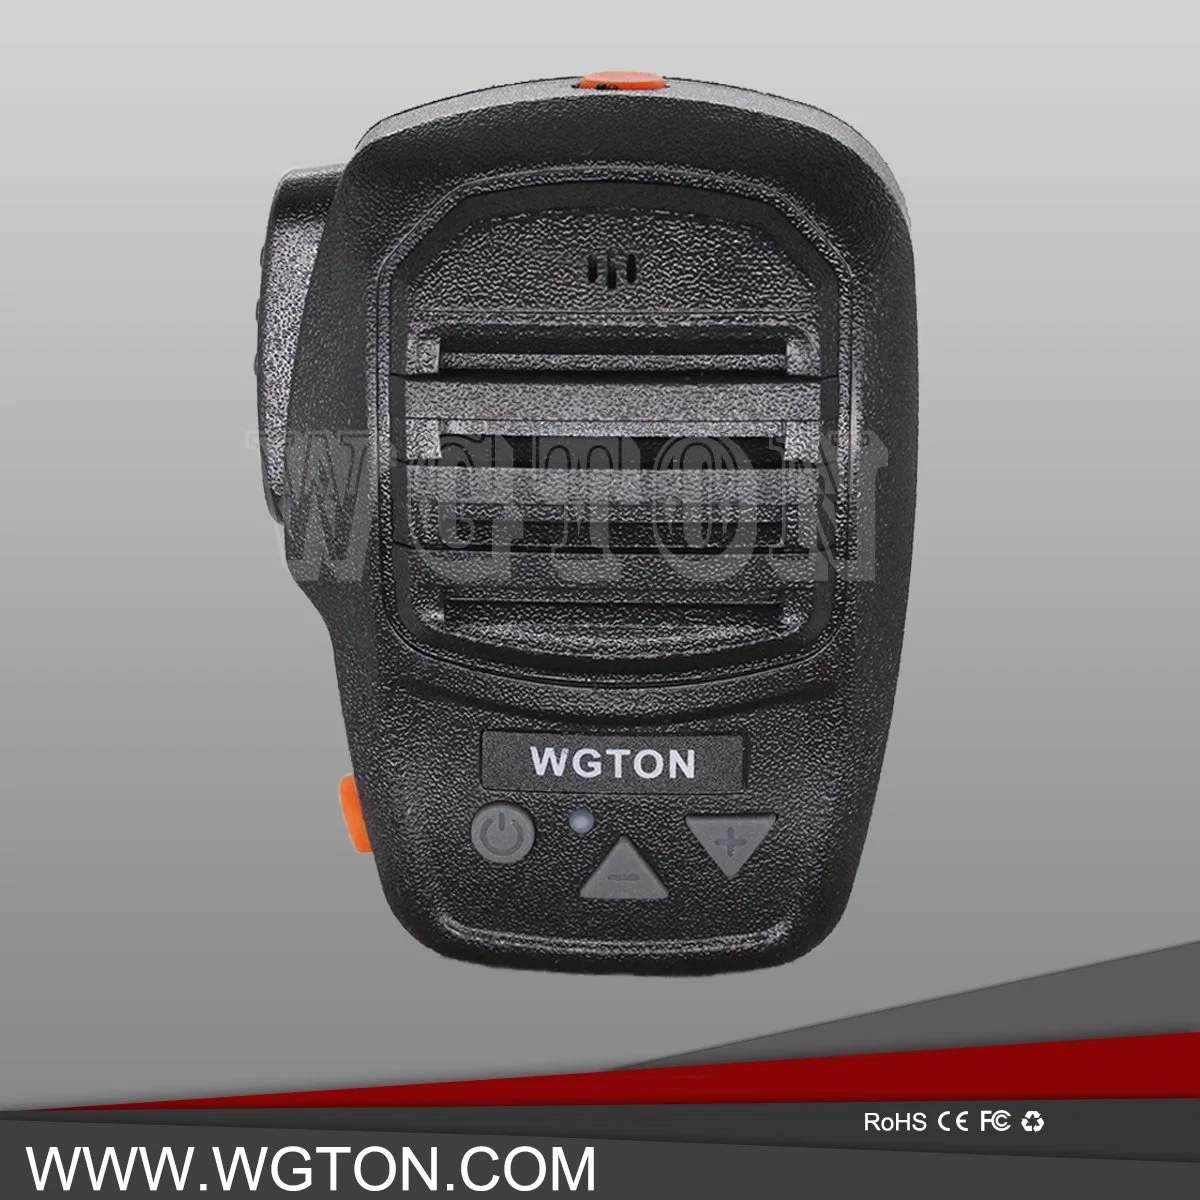 Wgton Bt150 3G/4G Alto-falante Bluetooth Fone de ouvido com microfone corresponder Smart Poc Rádio para Kirisun, Hytera, Belfone, Mytera, Bfdx, Inrico etc Rádio de Duas Vias